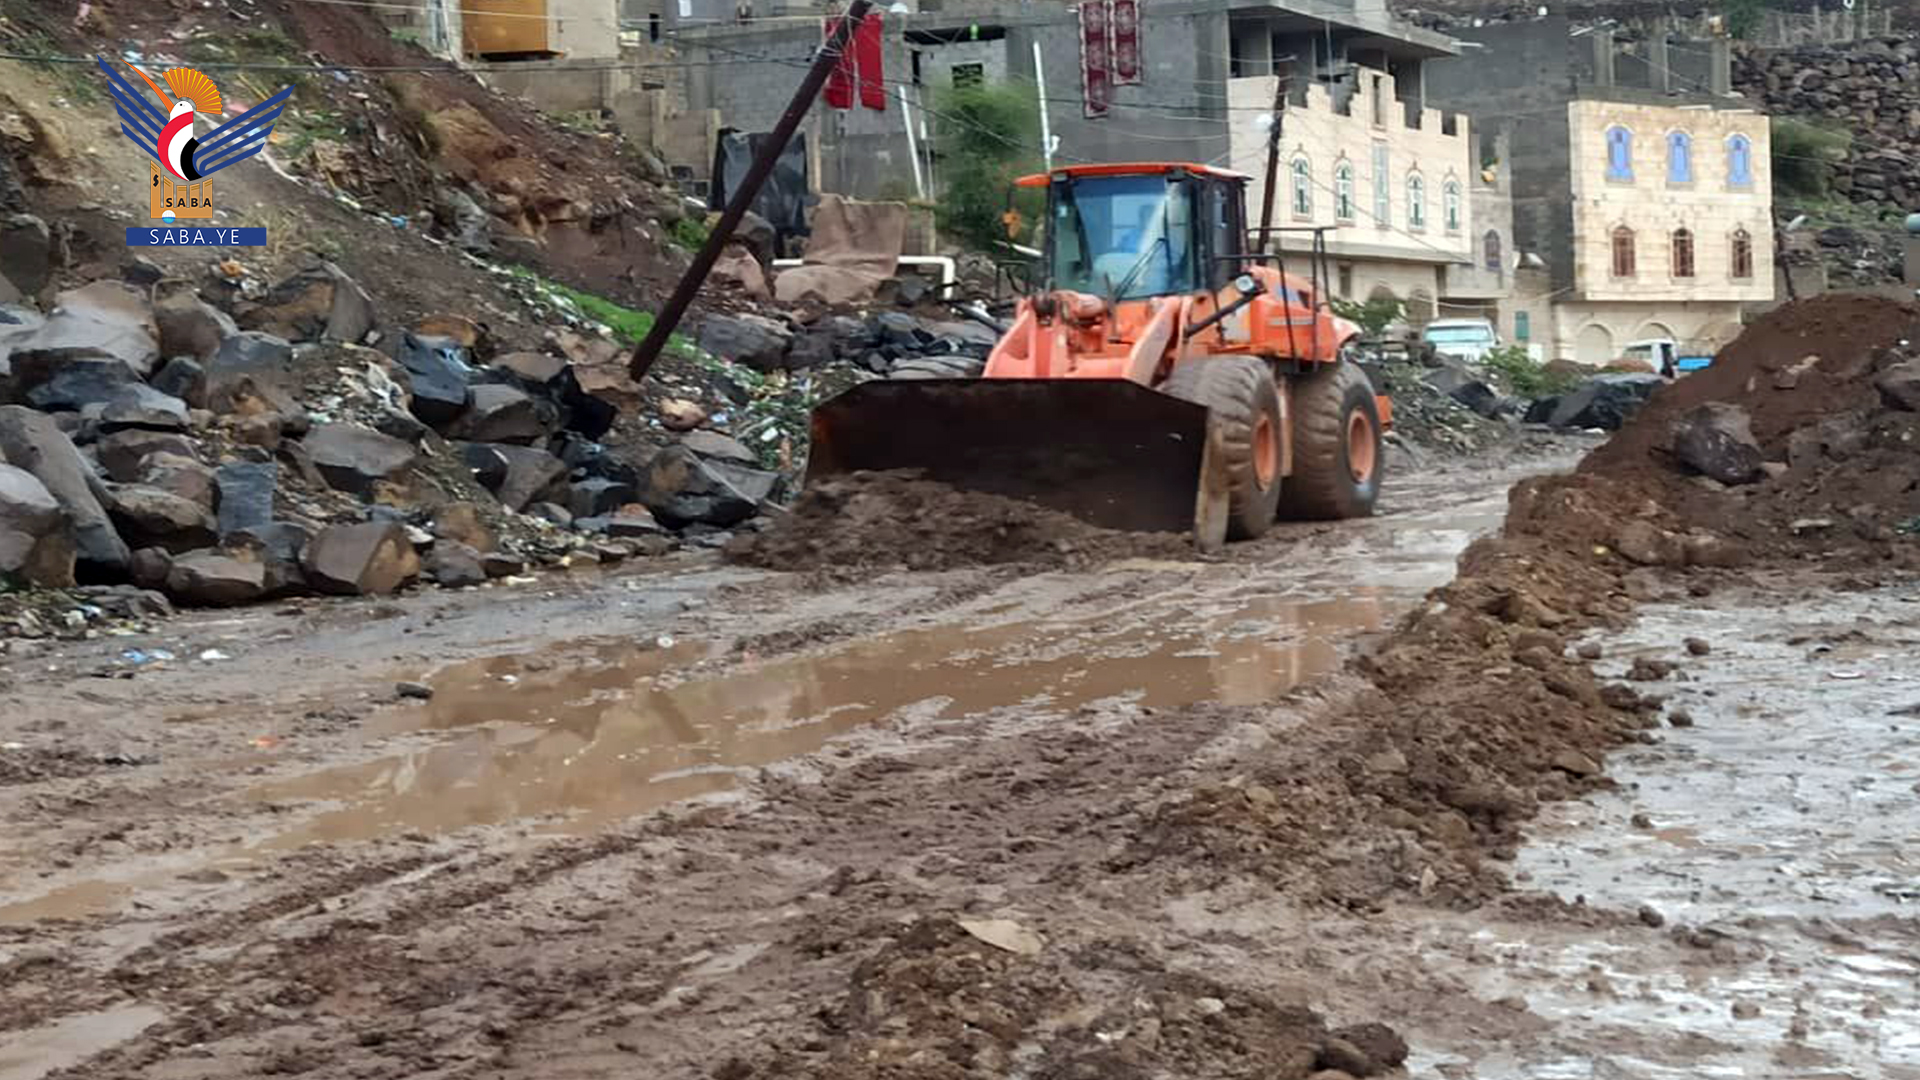 Verfüllen von Gruben, das Ablassen von Regenwasser und sintflutartige Regenfälle gehen in der Hauptstadt weiter